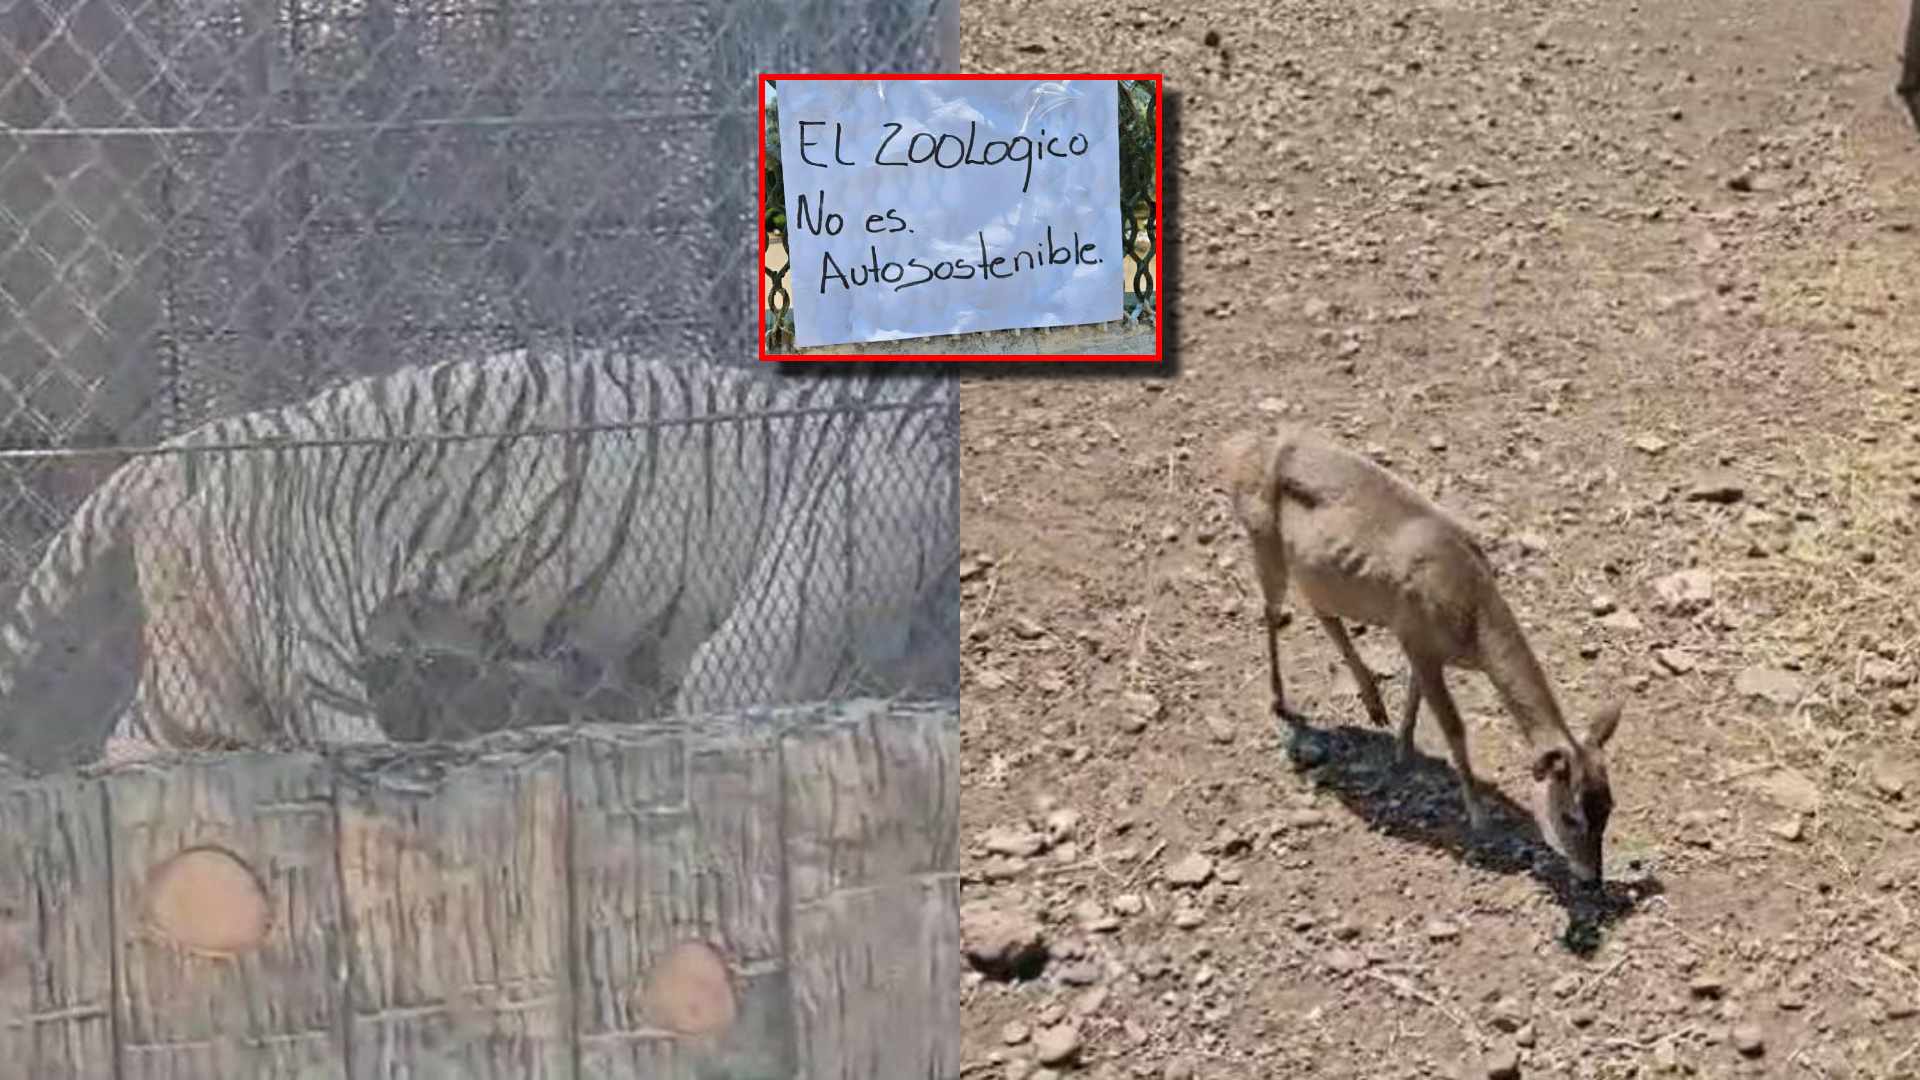 VIDEOGALERÍA| "Mueren de hambre": Animales en estado deplorable en zoológico Joya Grande